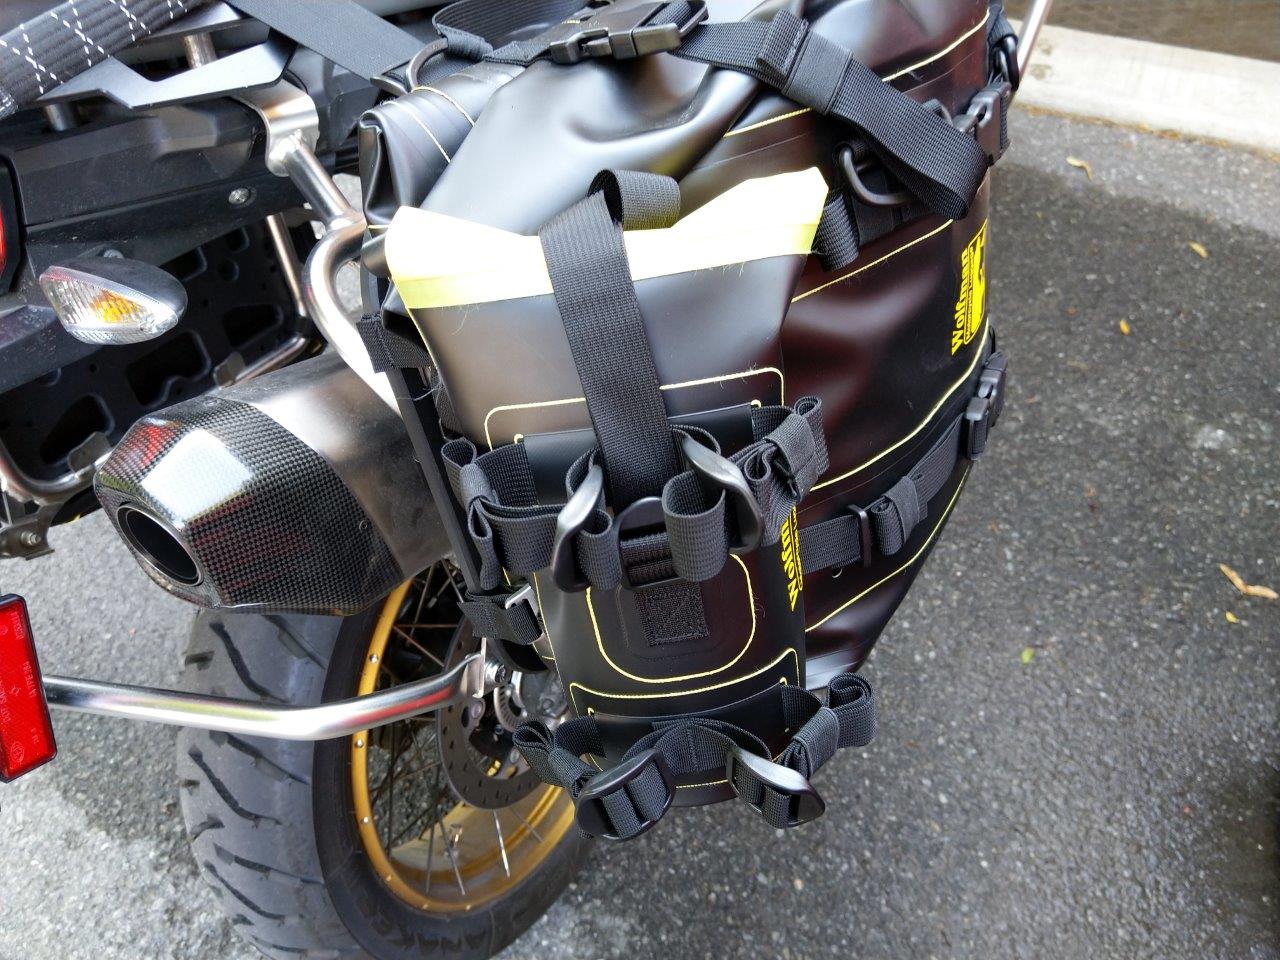 E-12 Saddle Bags - Motorcycle Luggage by Wolfman – Wolfman Luggage